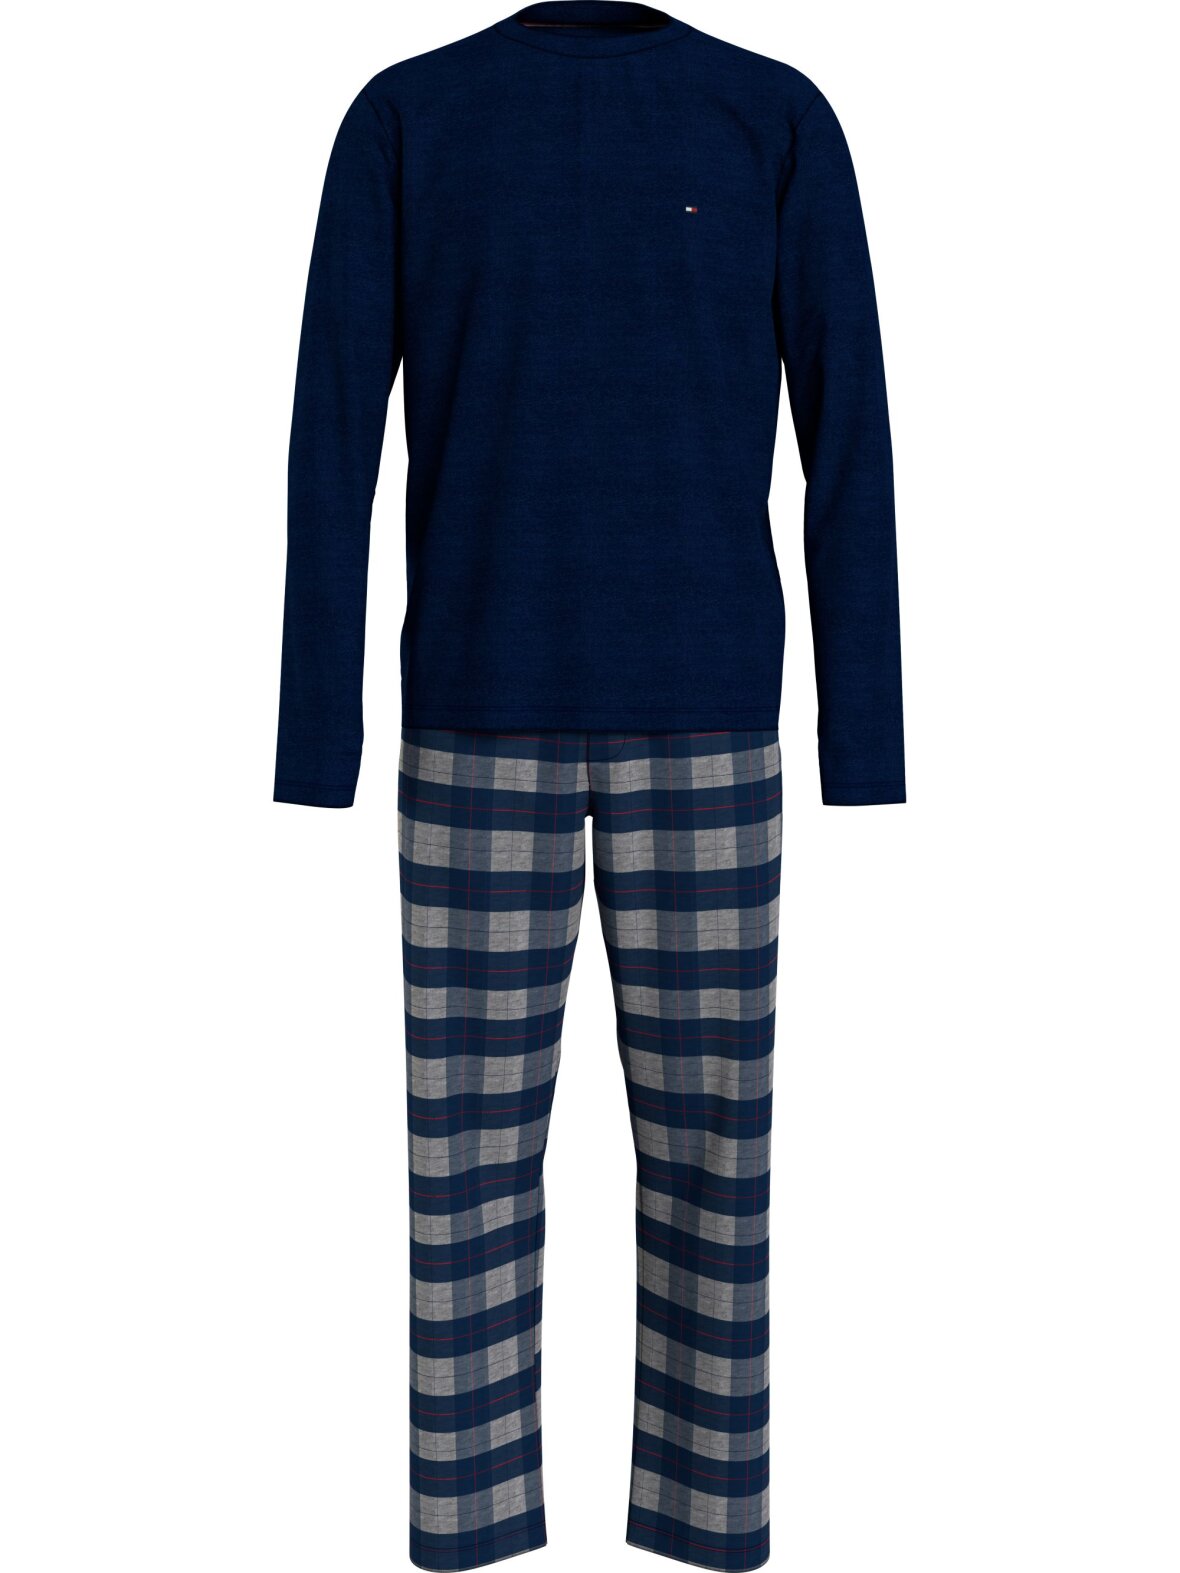 pegs Skære Bulk CC Christensen - Lækker pyjamas fra Tommy Hilfiger